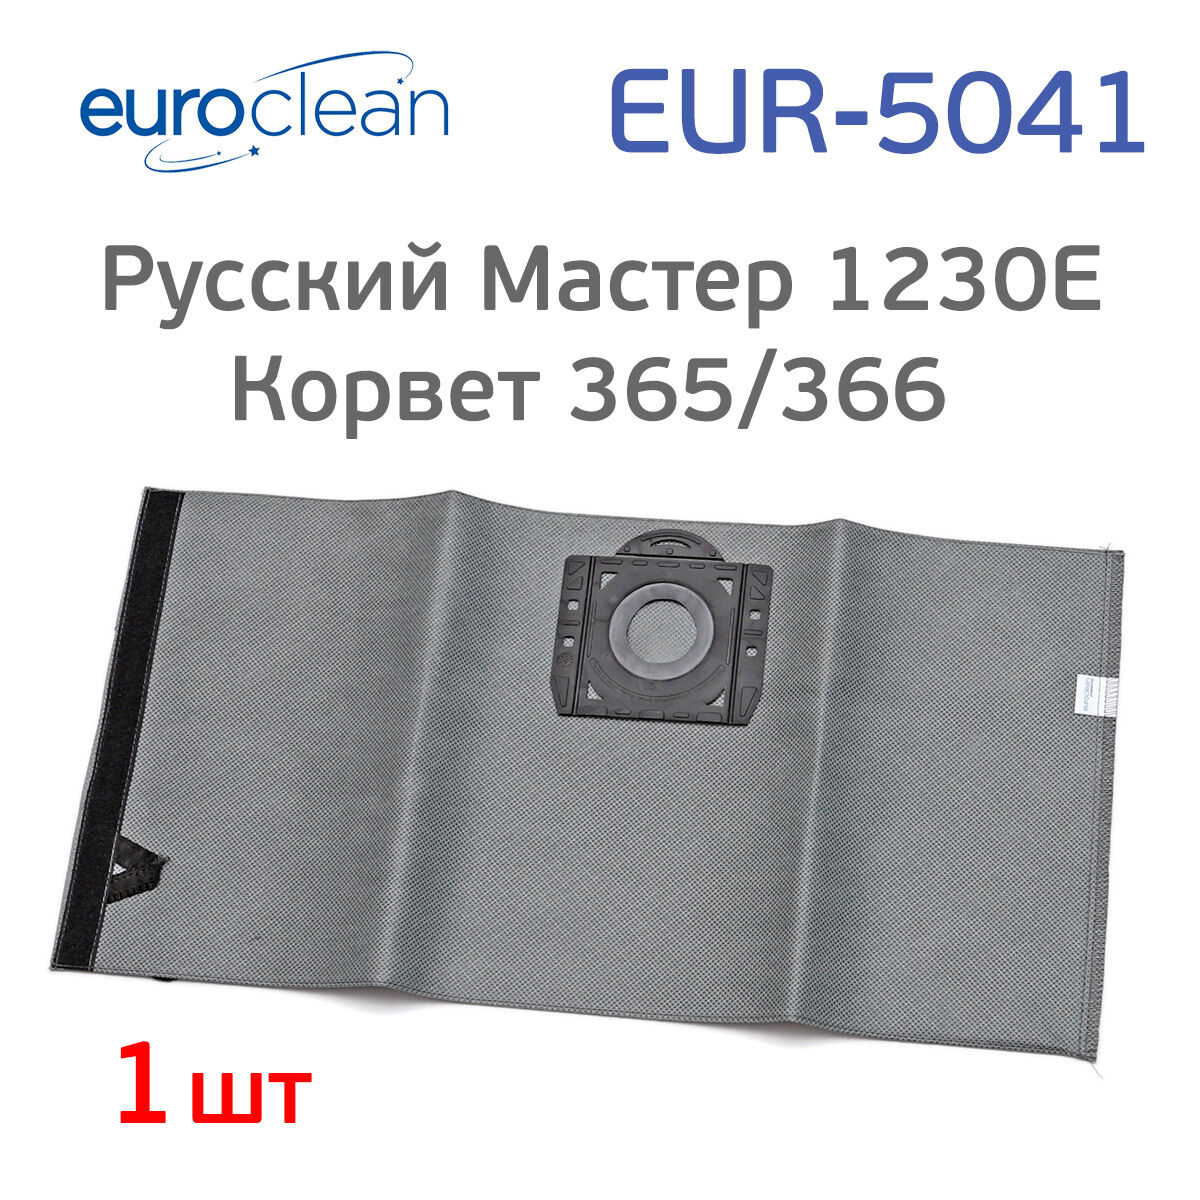 Мешок для пылесоса Корвет 365/366, Русский Мастер 1230E, многоразовый EUR-5041